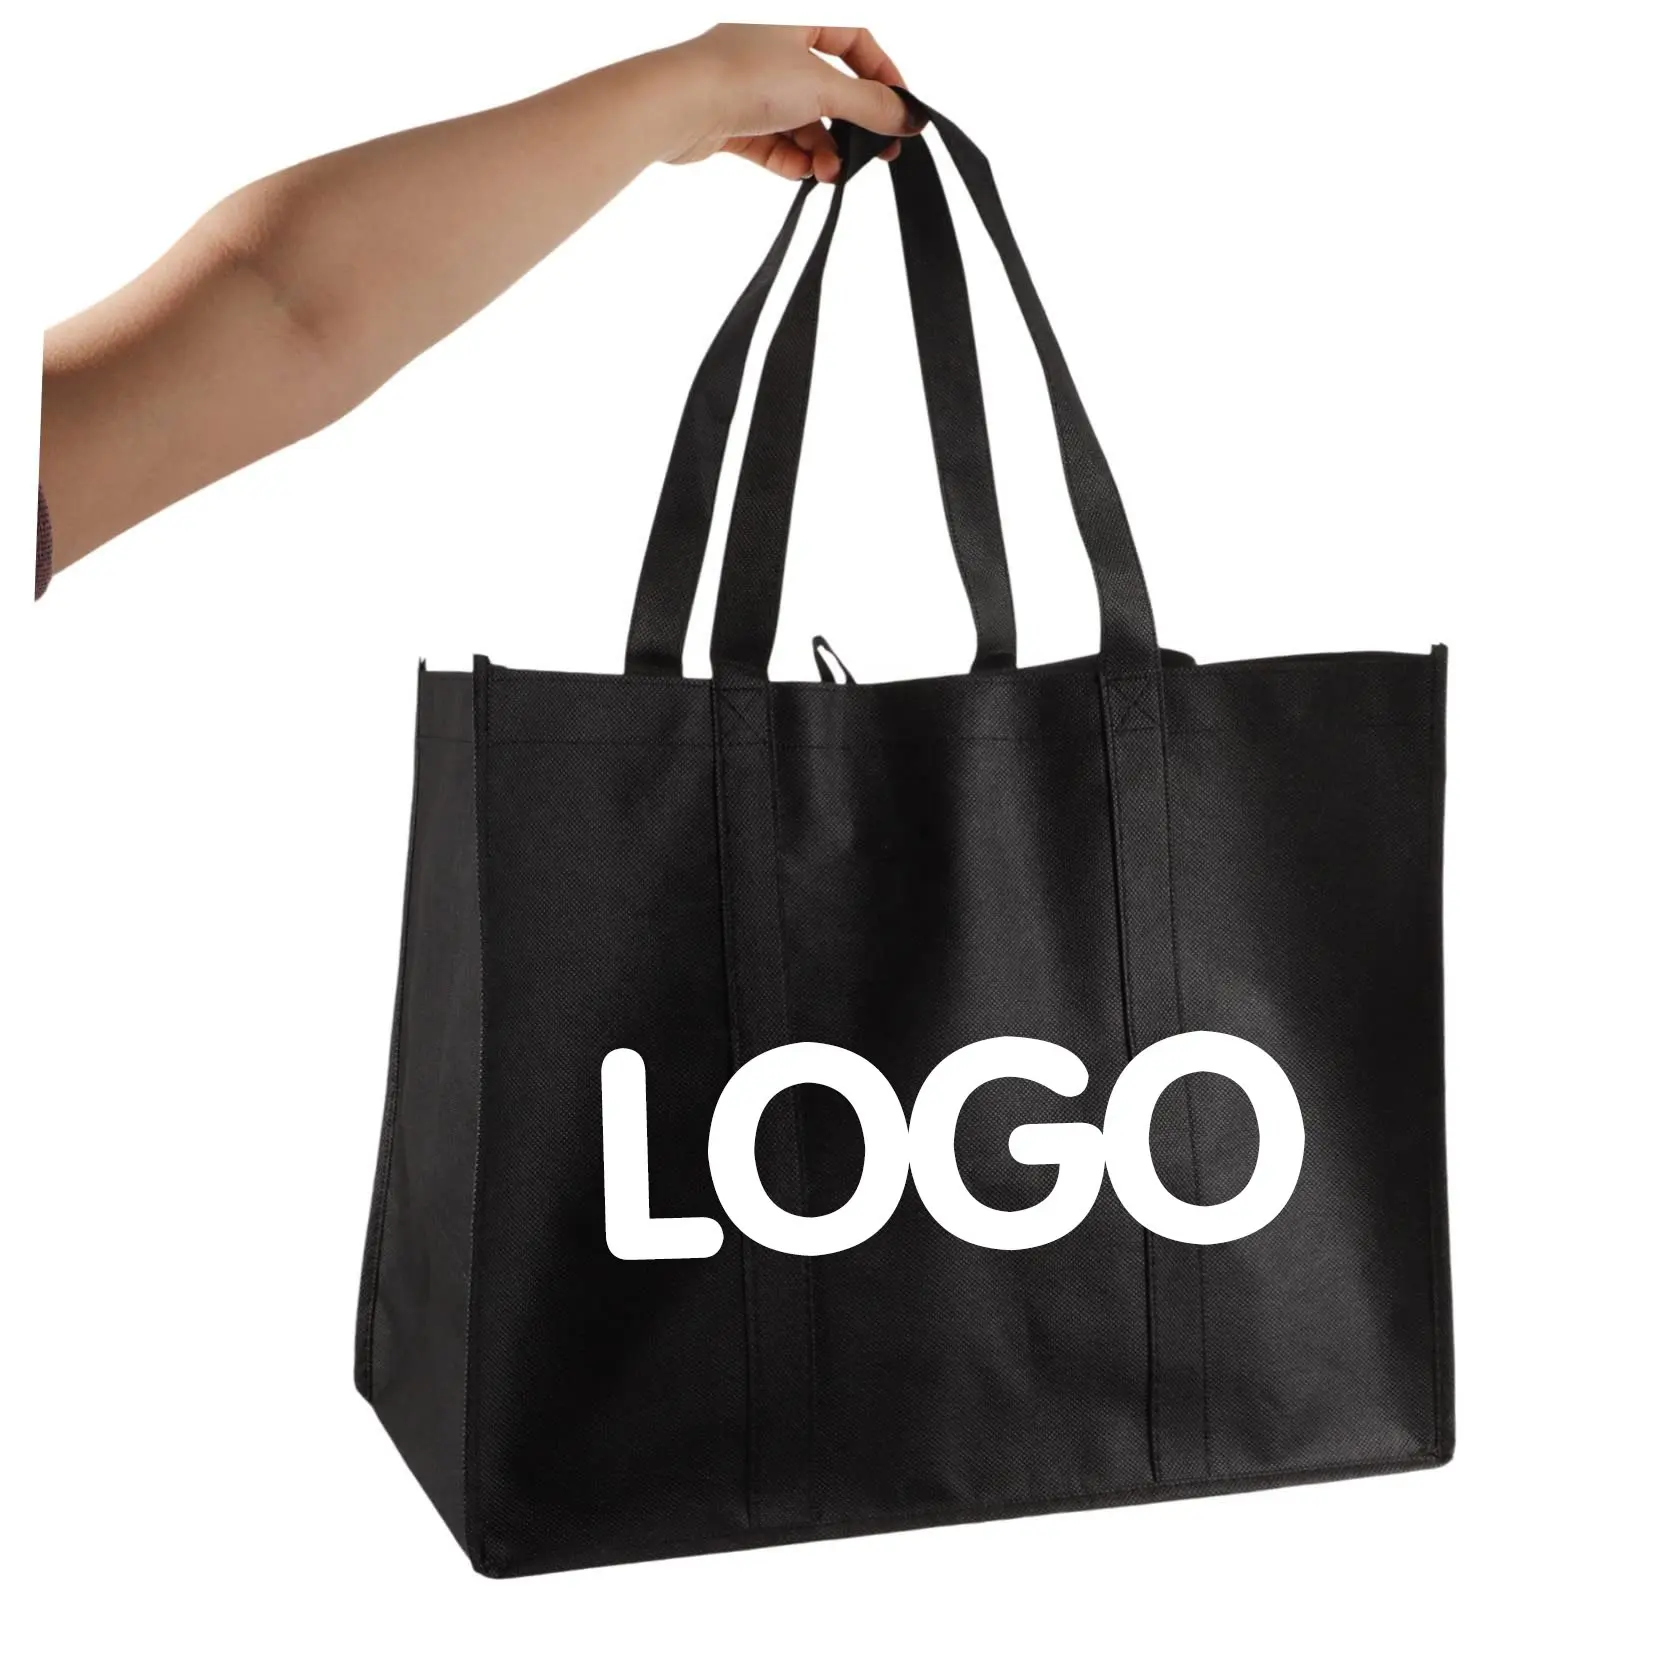 합리적인 가격 접이식 일반 부직포 휴대용 가방 내마모성 플랫 바닥 최고의 간단한 부직포 가방